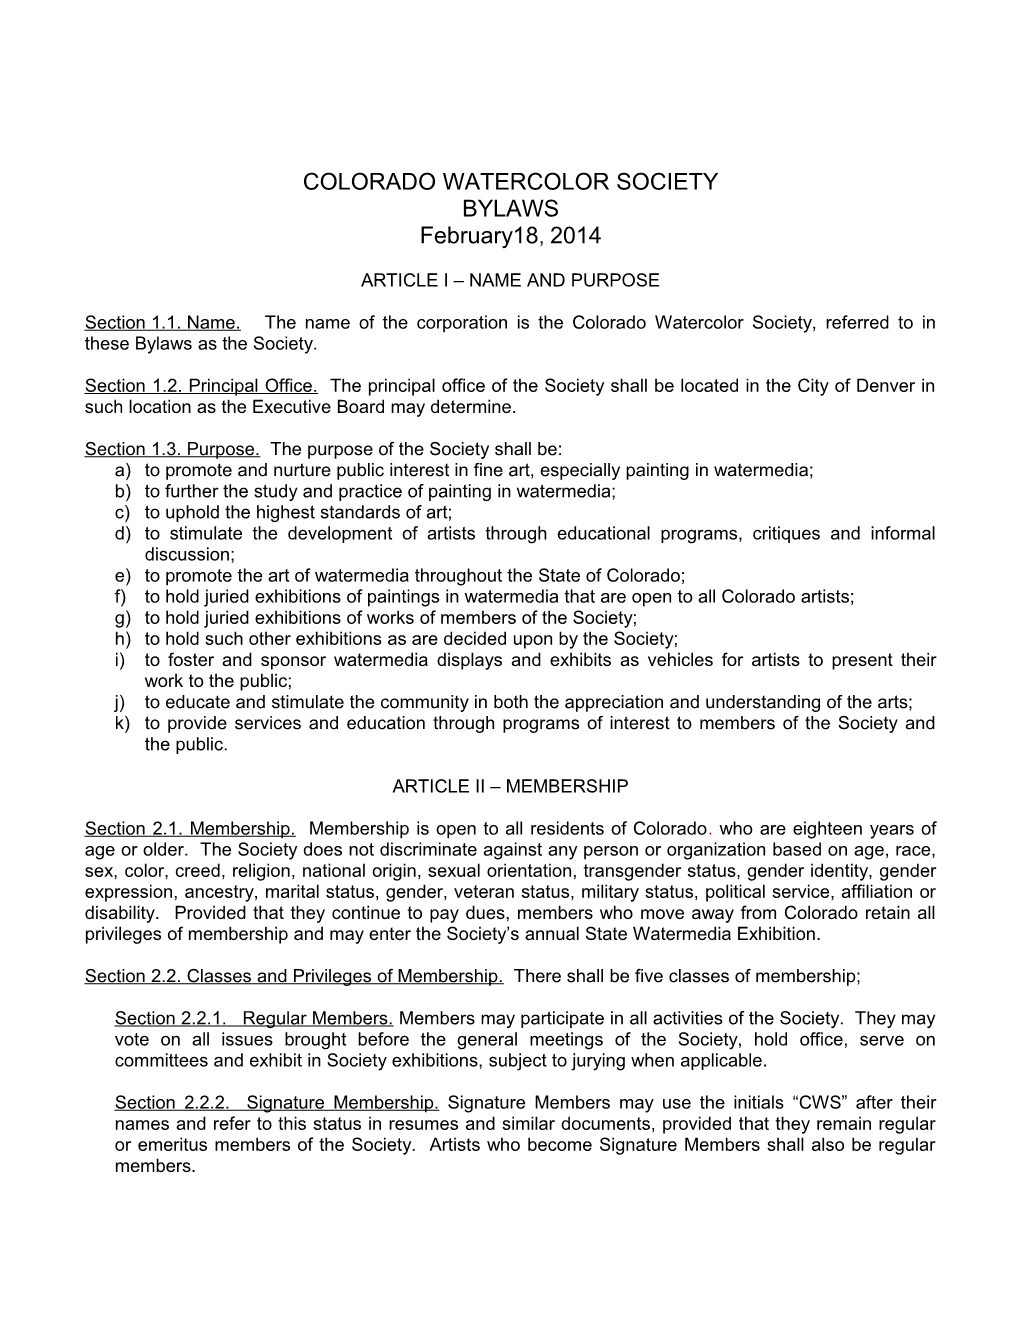 Colorado Watercolor Society